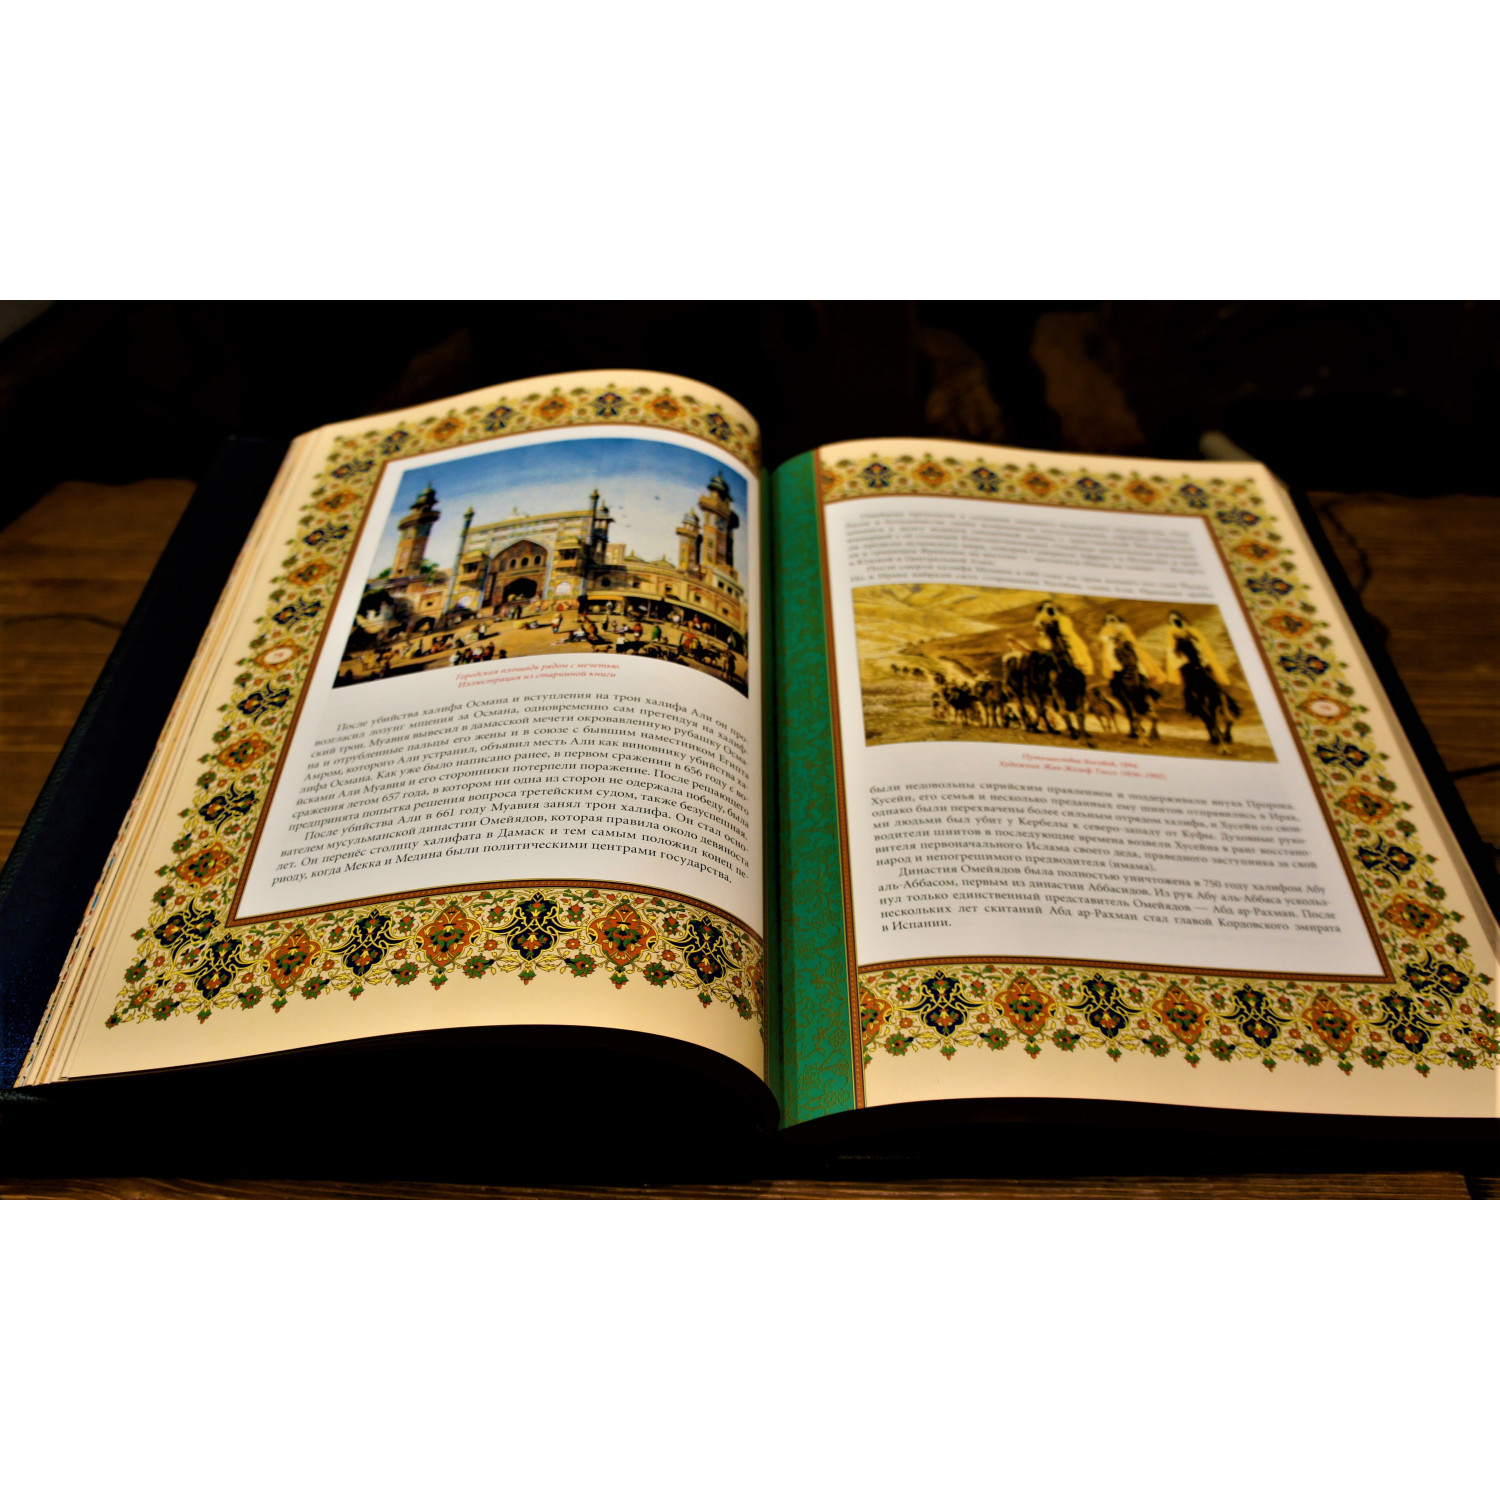 Ислам,культура,история,вера в коробе-шкатулке  кожаном переплете ручной работы